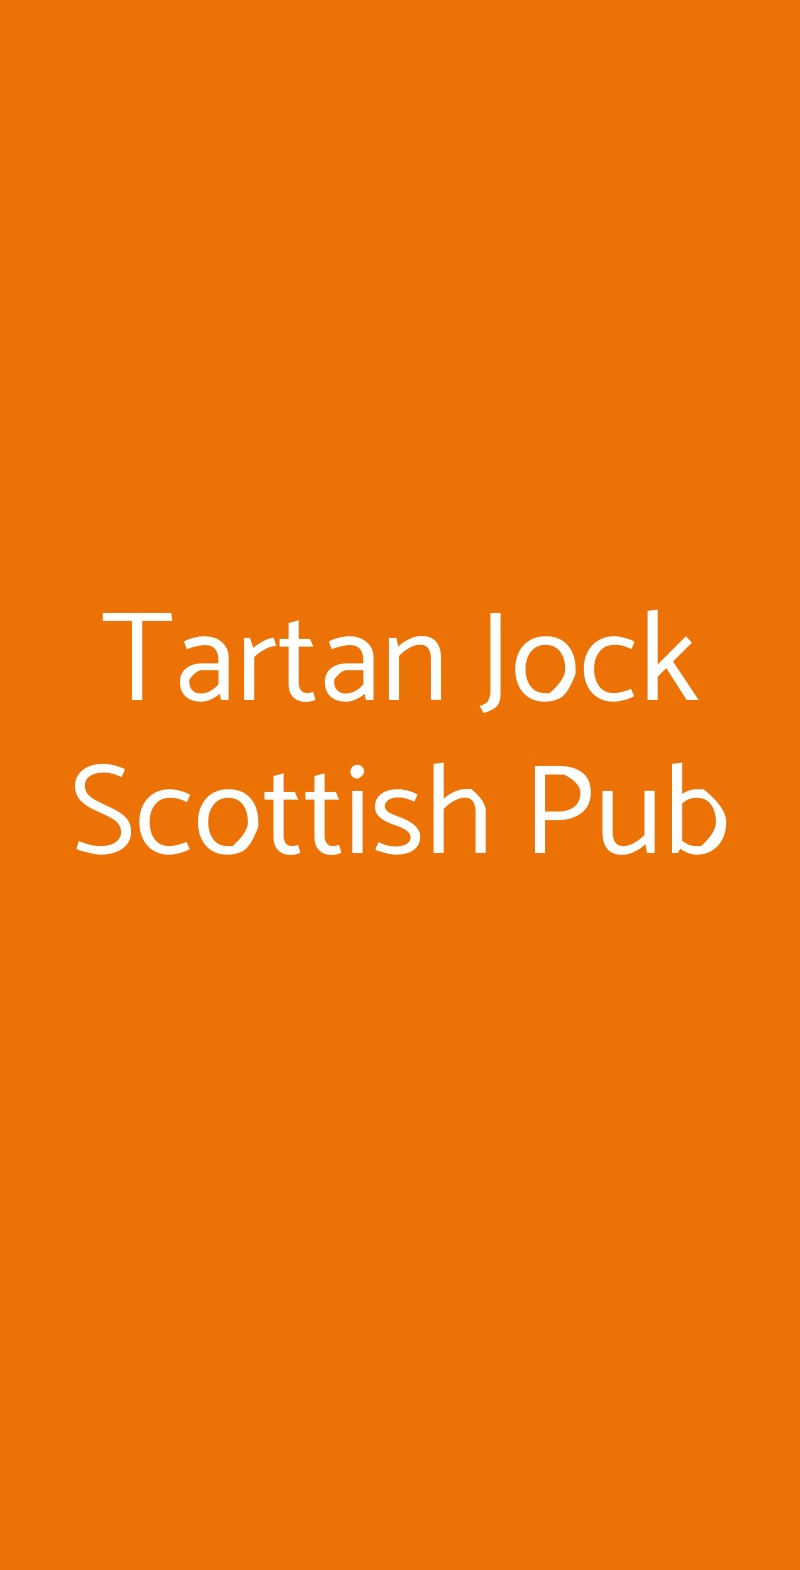 Tartan Jock Scottish Pub Firenze menù 1 pagina